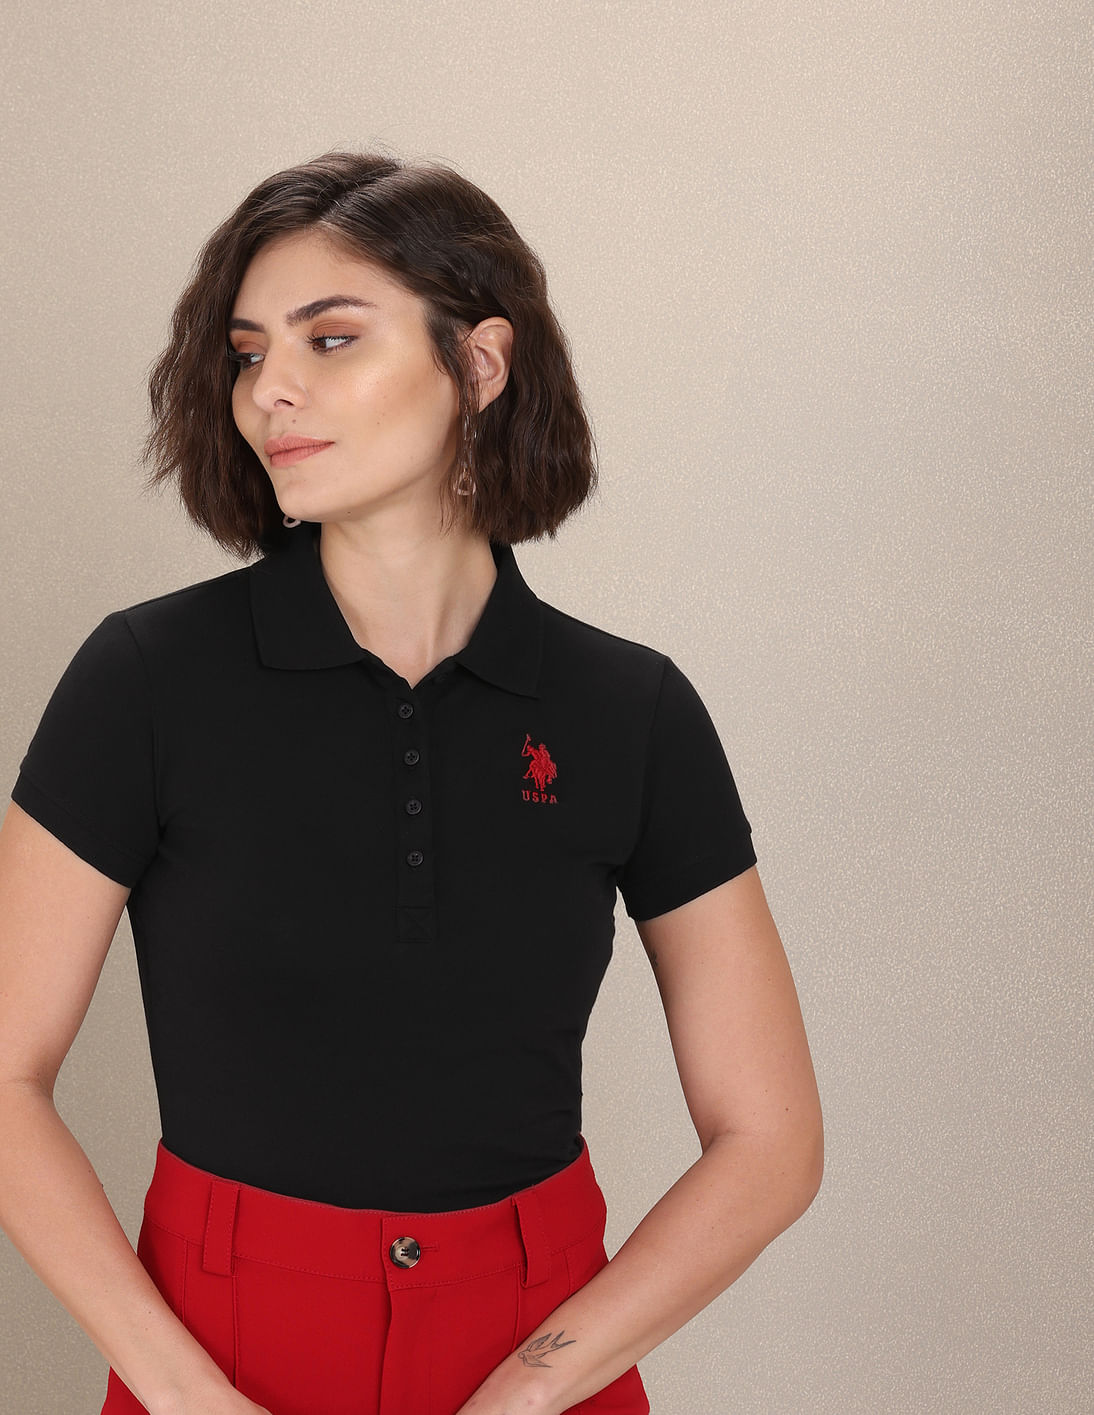 Ralph Lauren Women's Slim Red Polo Shirt Polo Depop, 47% OFF